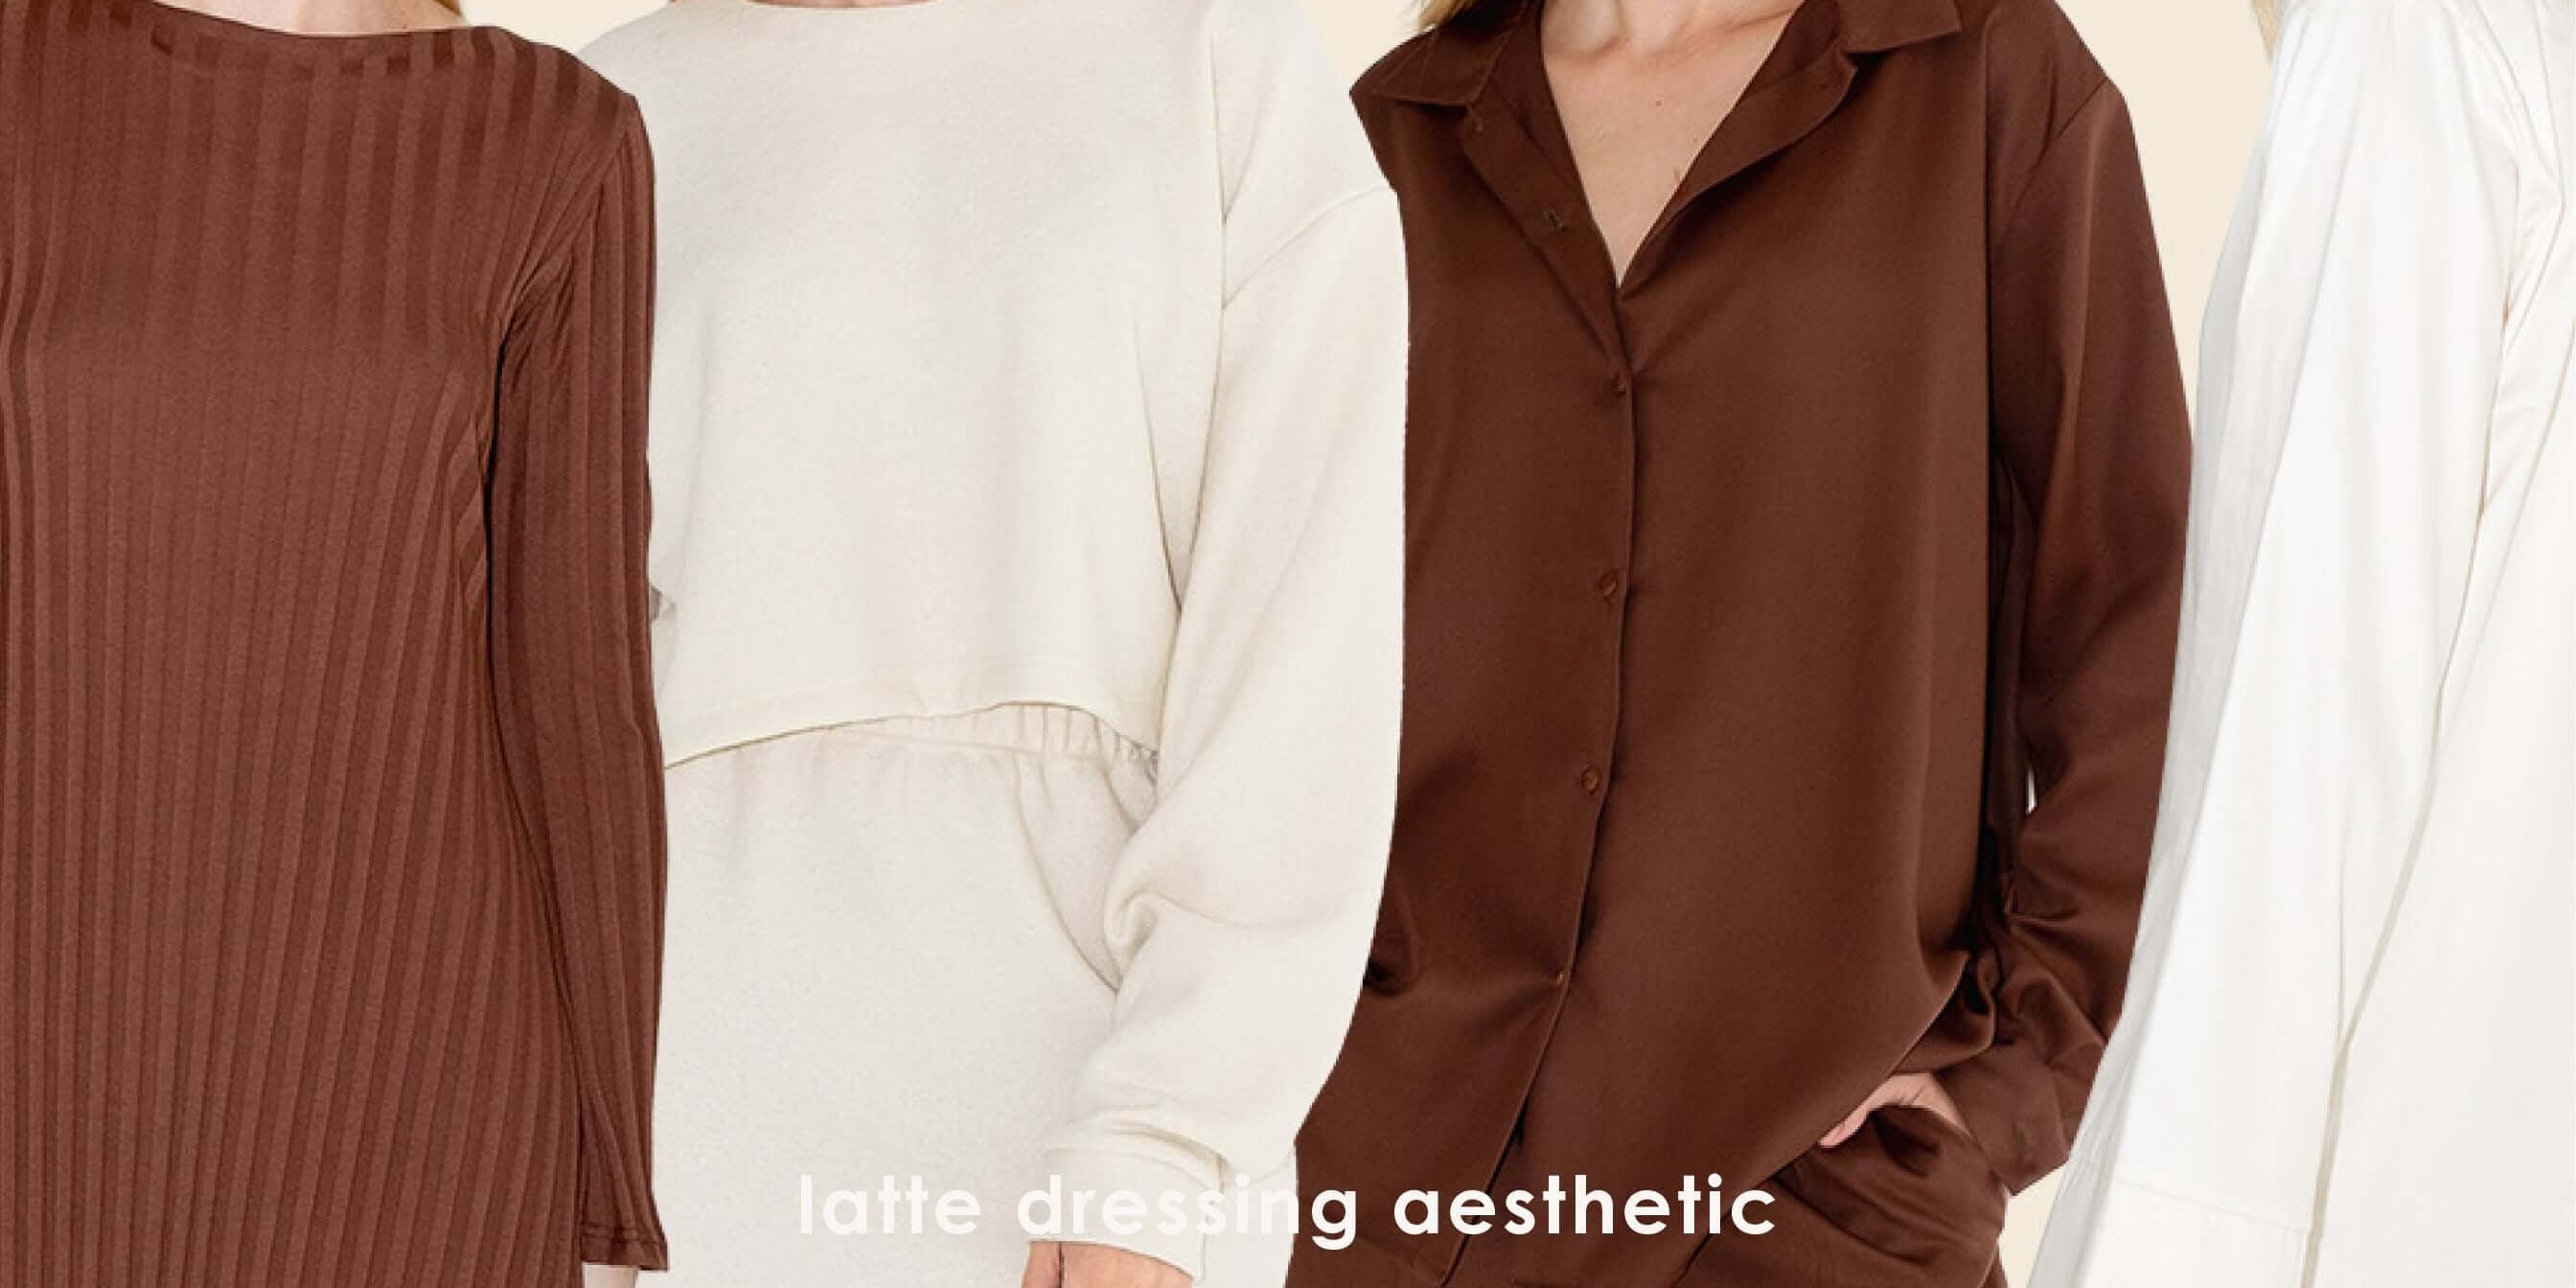 Latte Dressing: Nadčasový módní trend pro každou sezónu